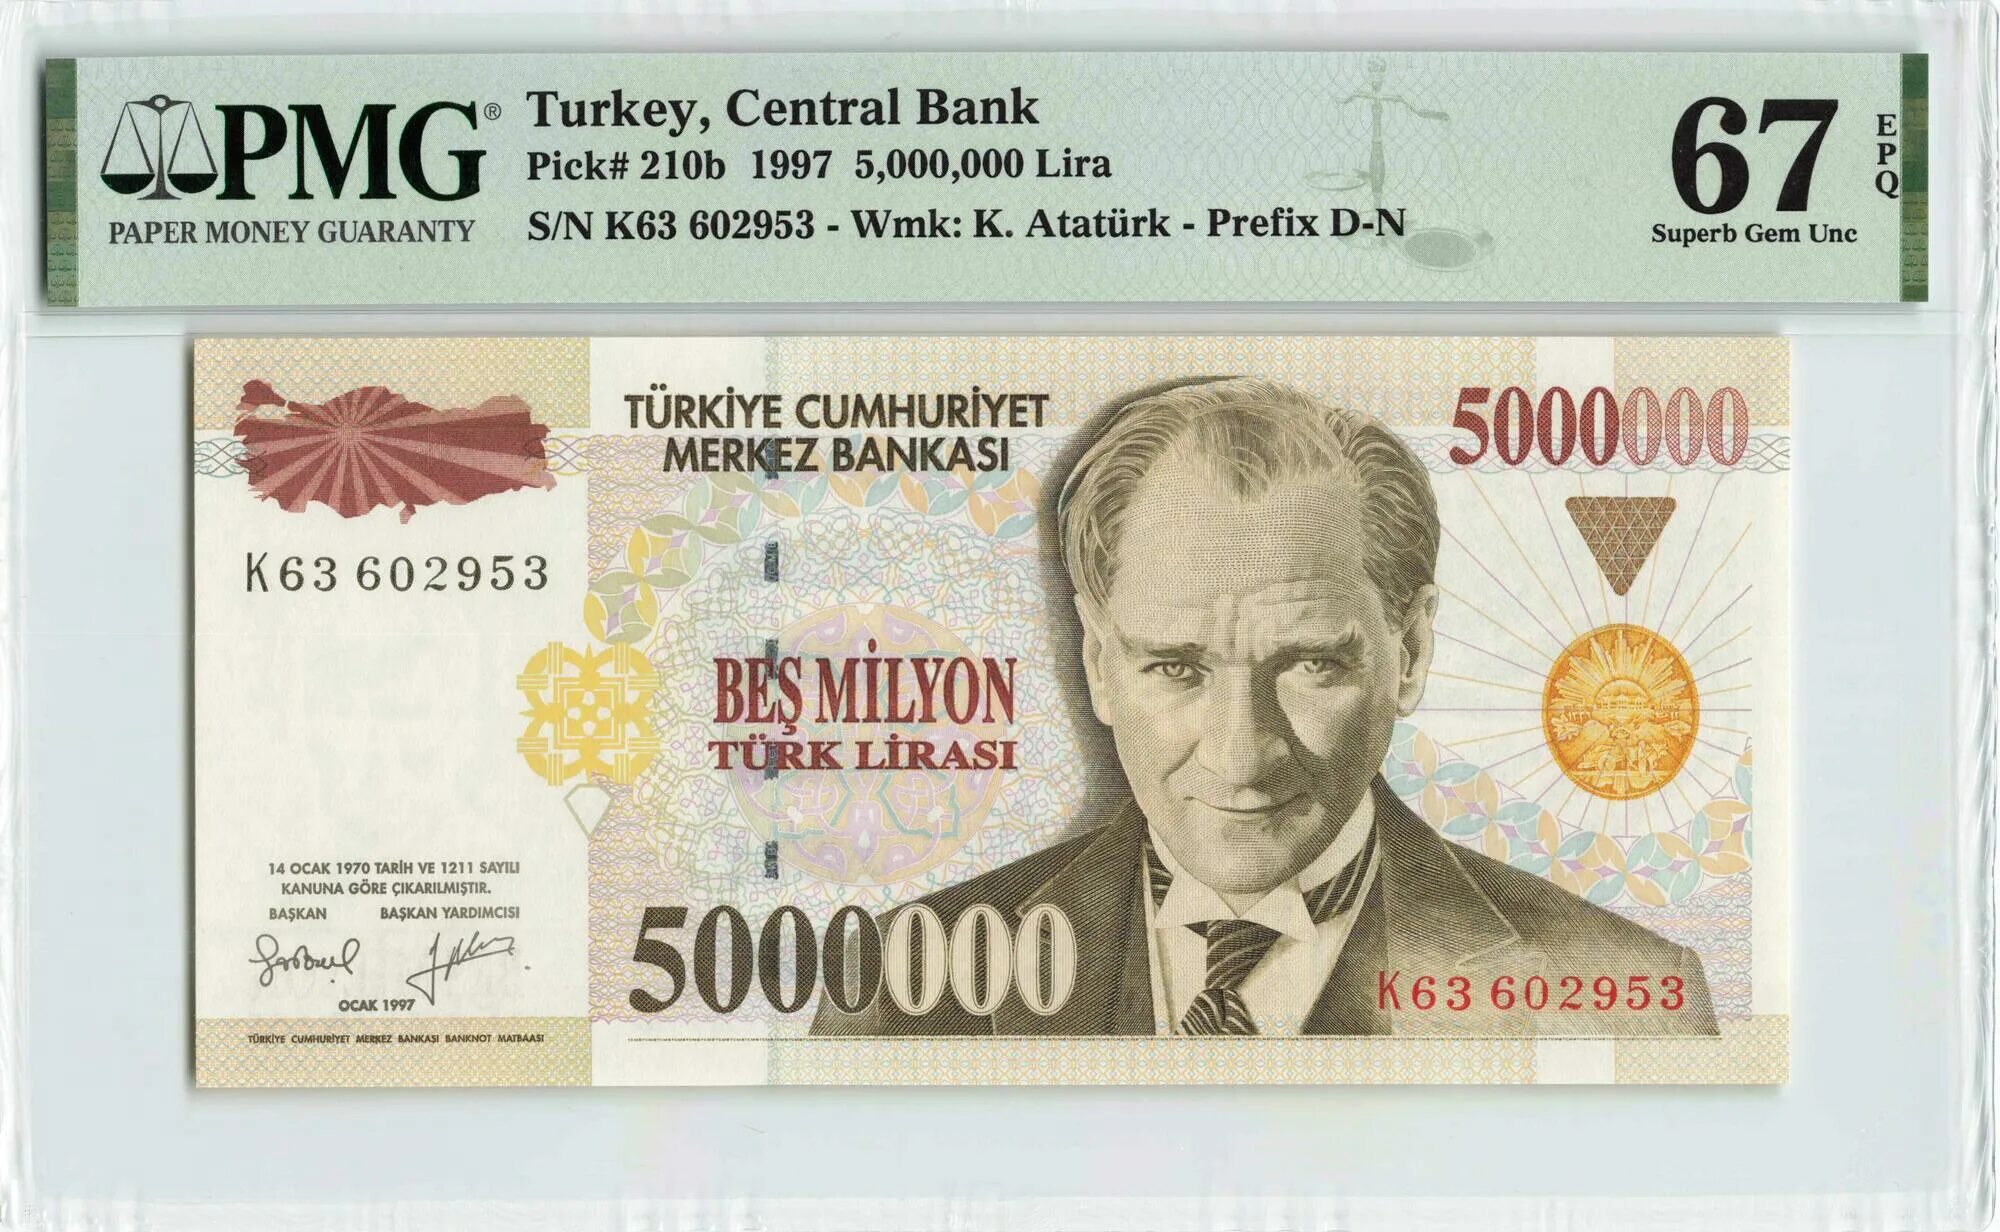 105 лир в рублях. 5000000 Лир. 5 Турецких лир. Банкноты Турции в обращении. 1000000 Turk Lirasi в рублях.